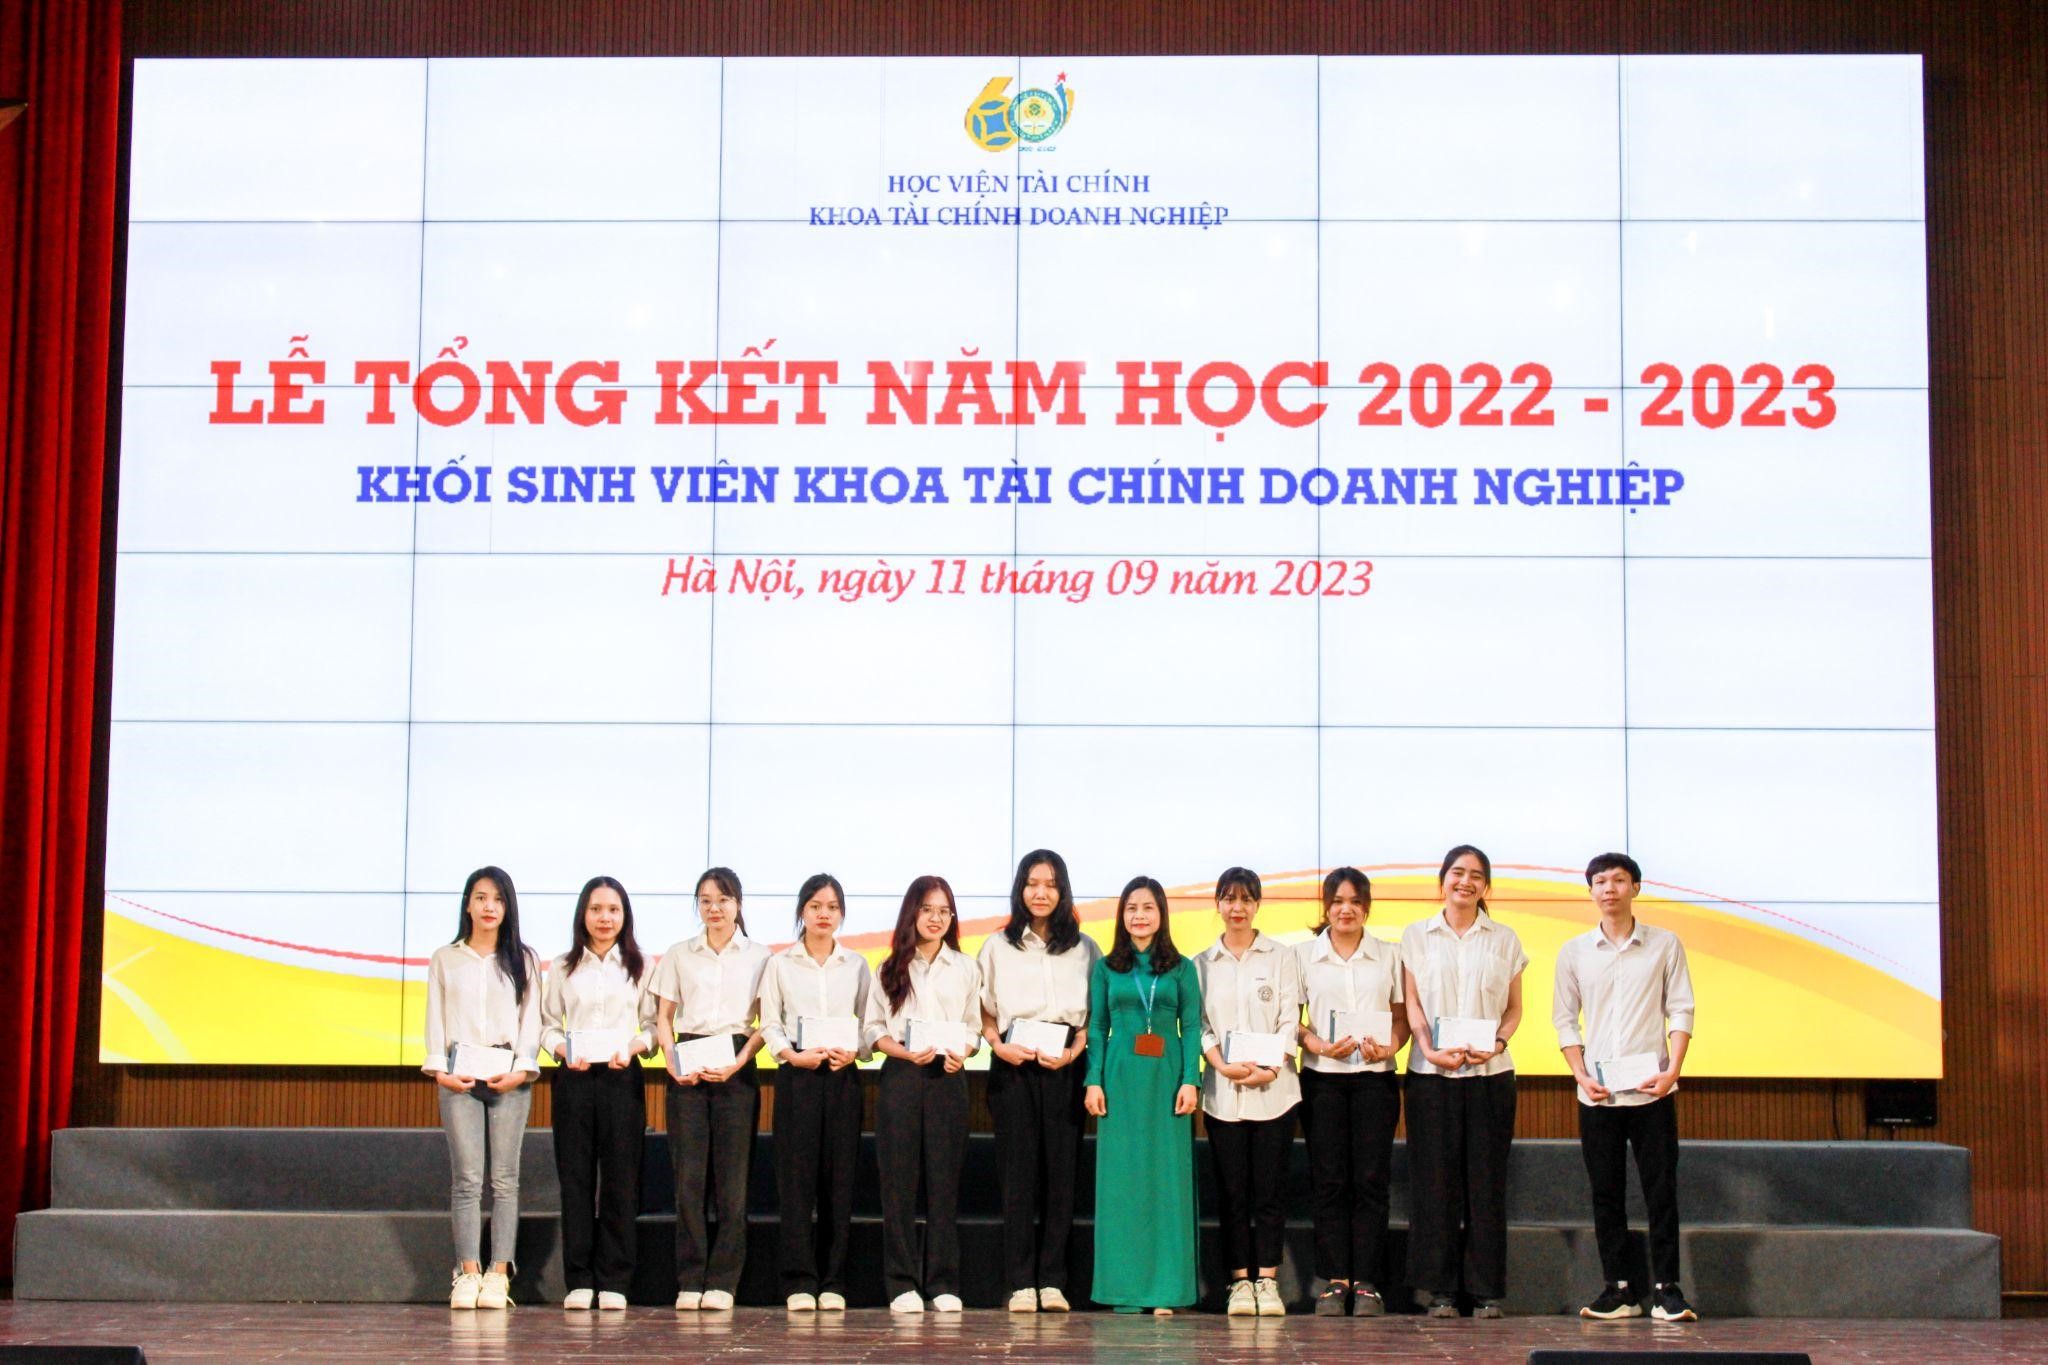 TS.Trần Thị Thanh Hà – Phó trưởng Bộ môn ĐGTS trao phần thưởng của BM ĐGTS cho các sinh viên đạt thành tích xuất sắc trong học tập